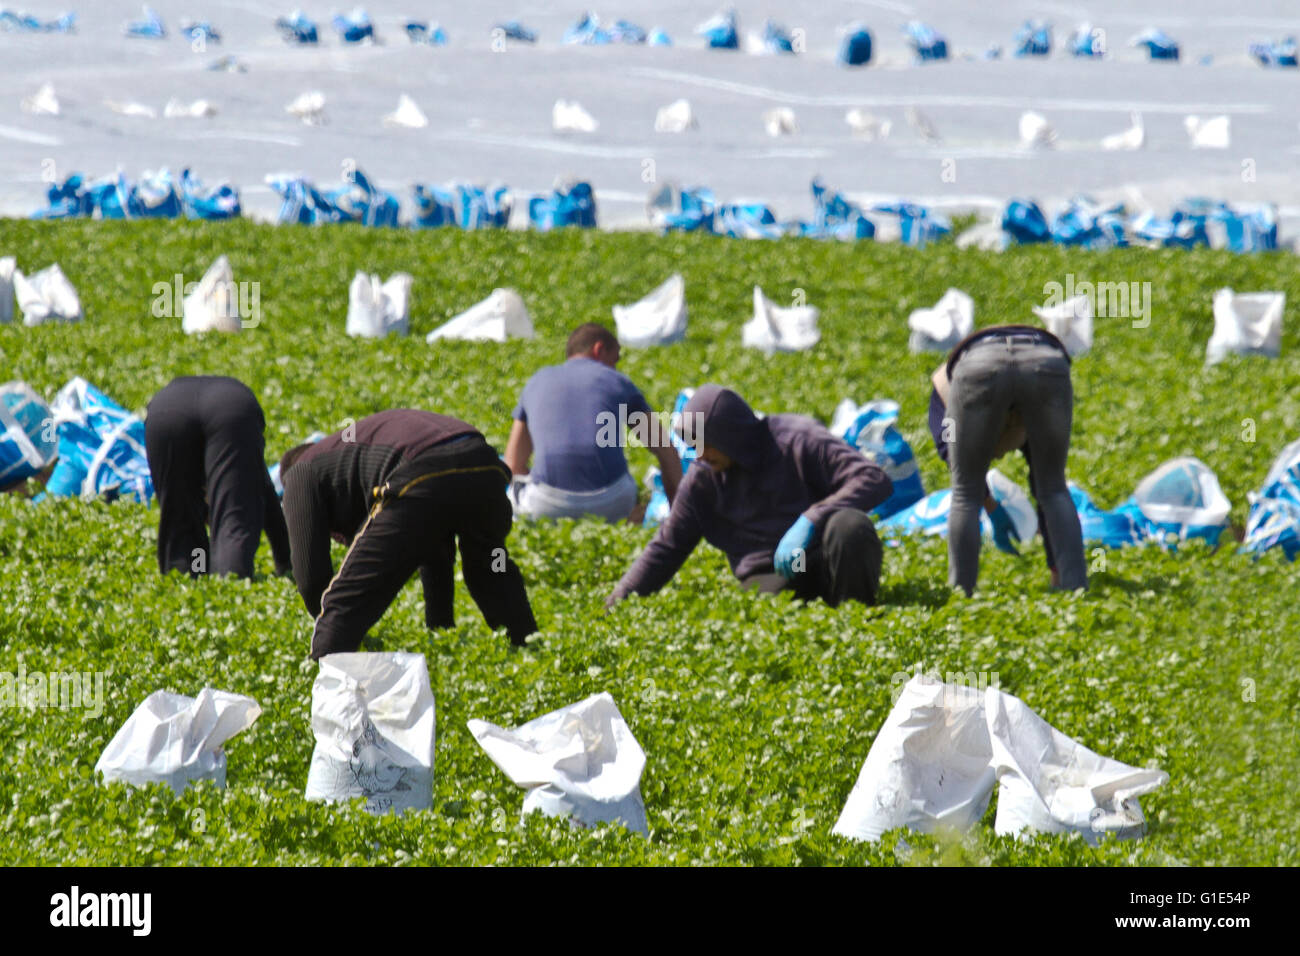 Travailleurs migrants de ferme de salade désherbant des cultures de laitue à Tarleton, Lancashire, Royaume-Uni Banque D'Images